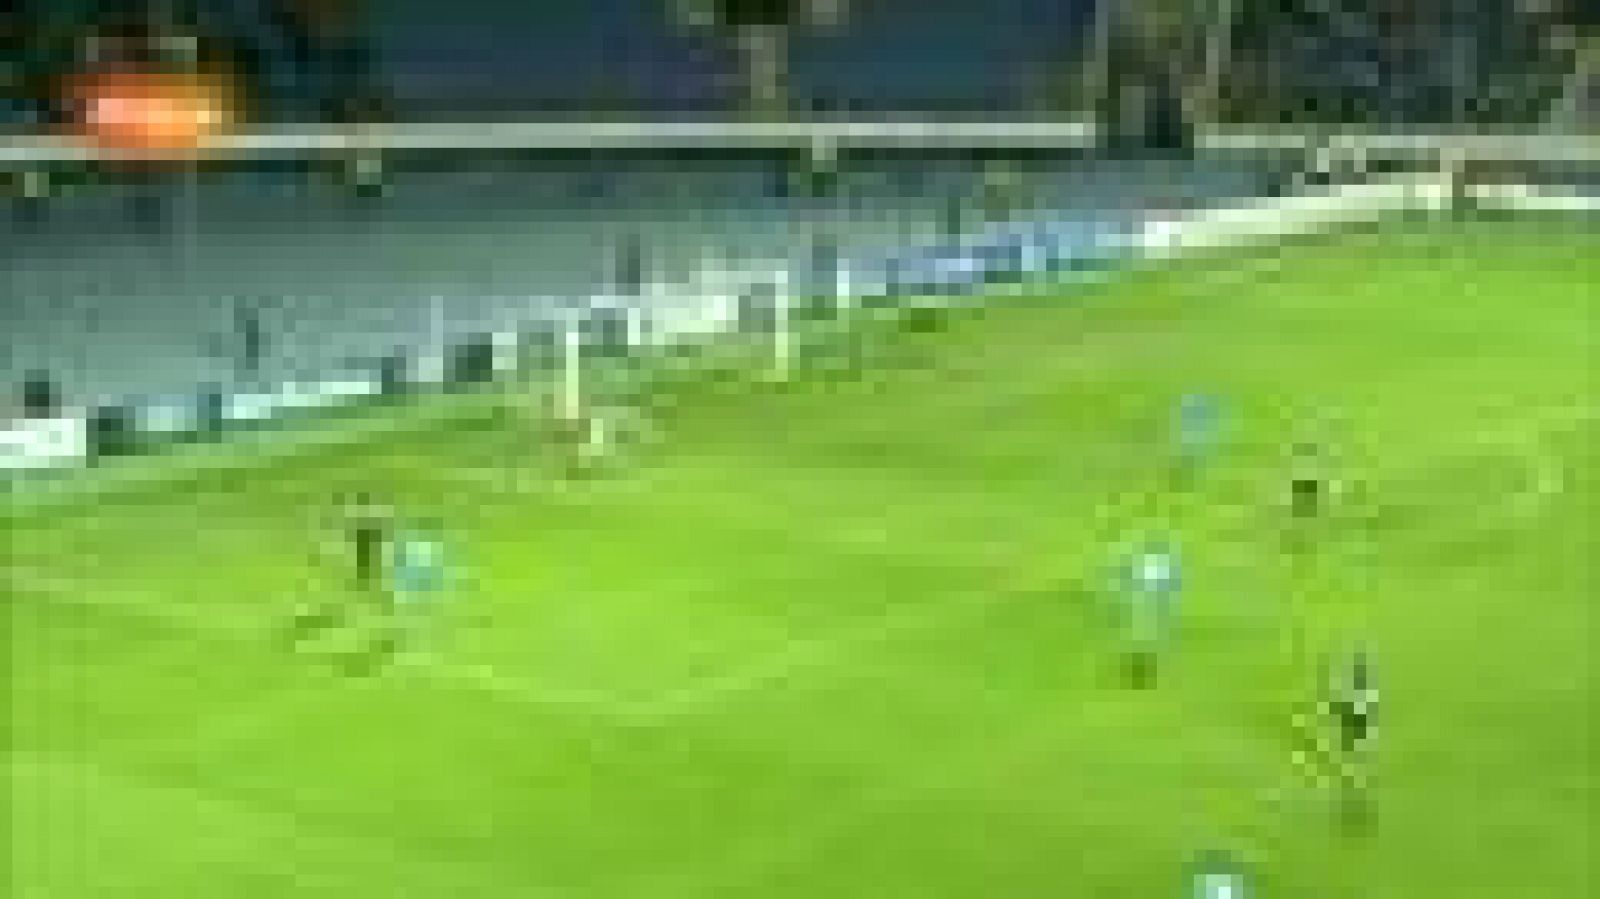 El jugador del Málaga Seba ha anotado el 0-2 ante el Zenit ruso en el minuto 9 de juego.